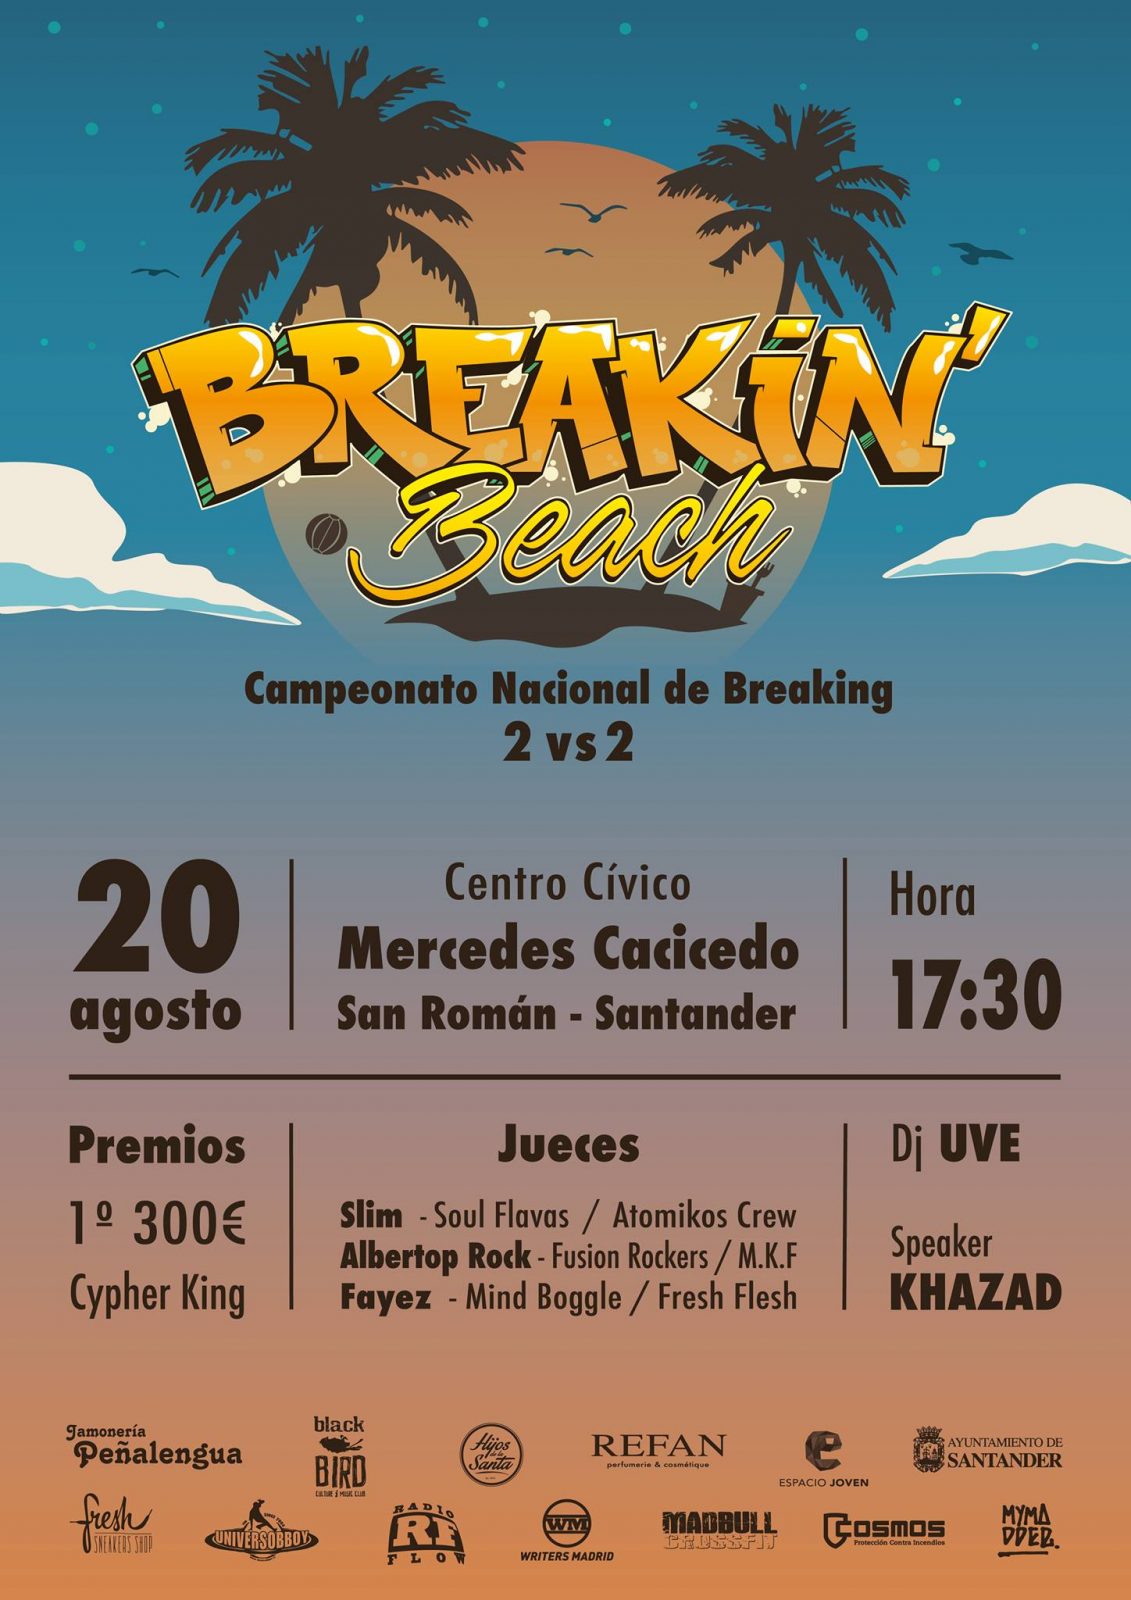 Cartel de Breakin' Beach, campeonato nacional de breaking en Santander